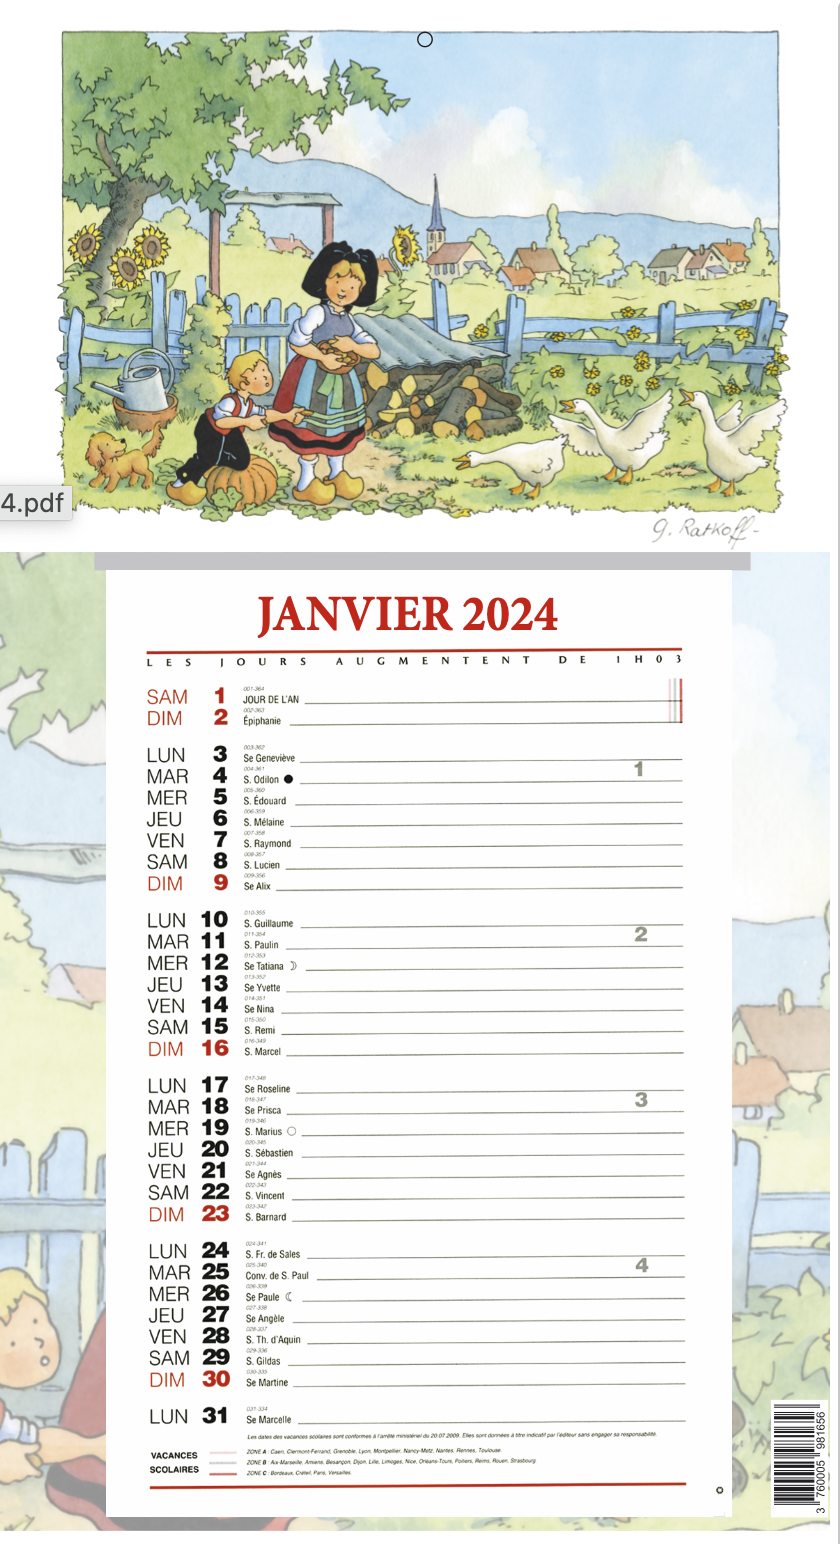 CALENDRIER EPHEMERIDE 2024 l'Alsace de Georges RATKOFF - 22.0 x 49.0 cm -  12 mois 